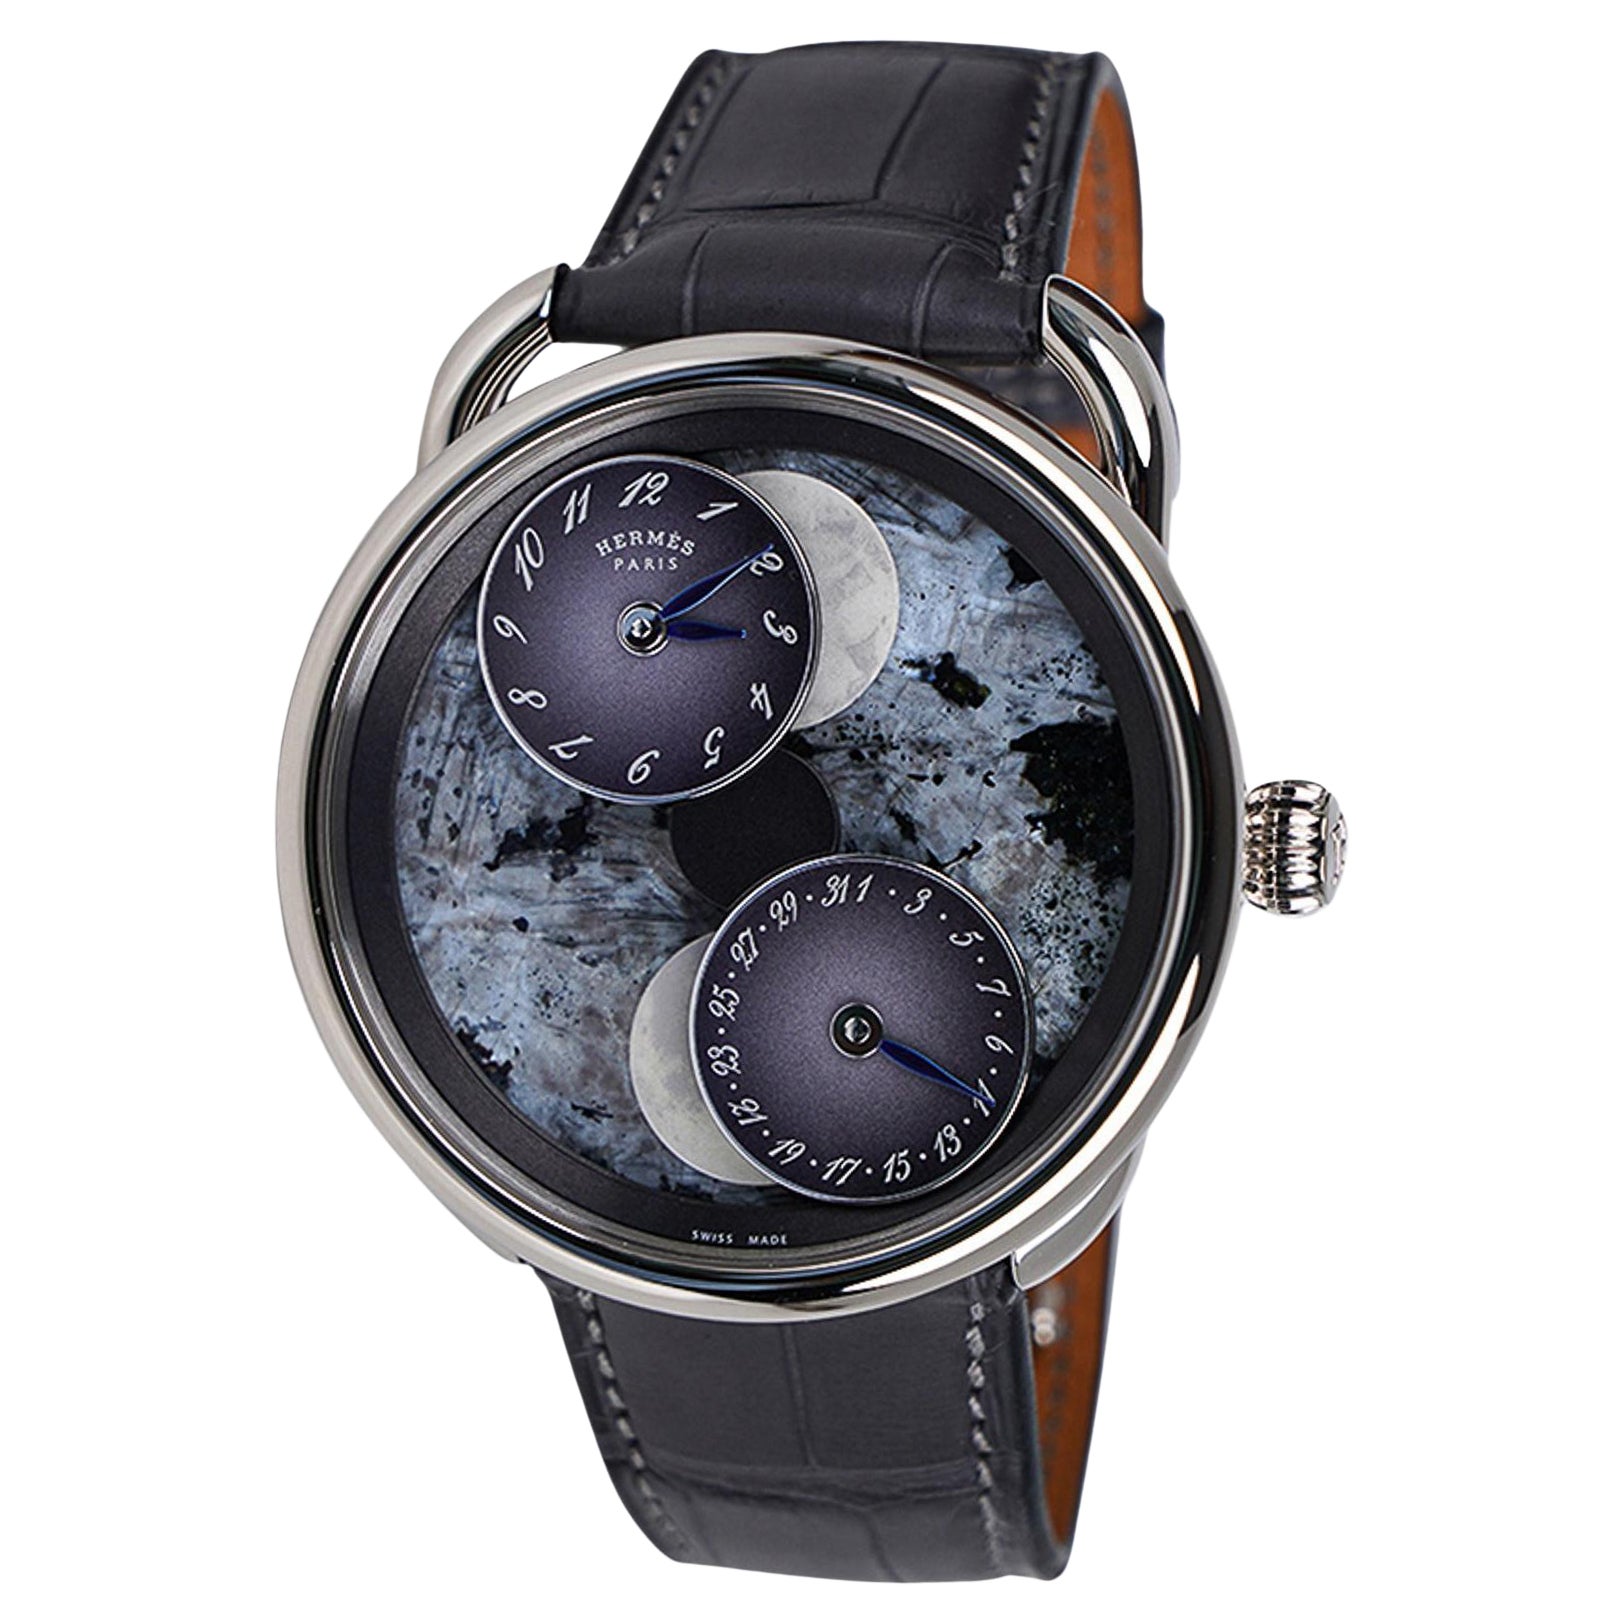 Hermes Arceau L'Heure De La Lune Only Watch Limited Edition